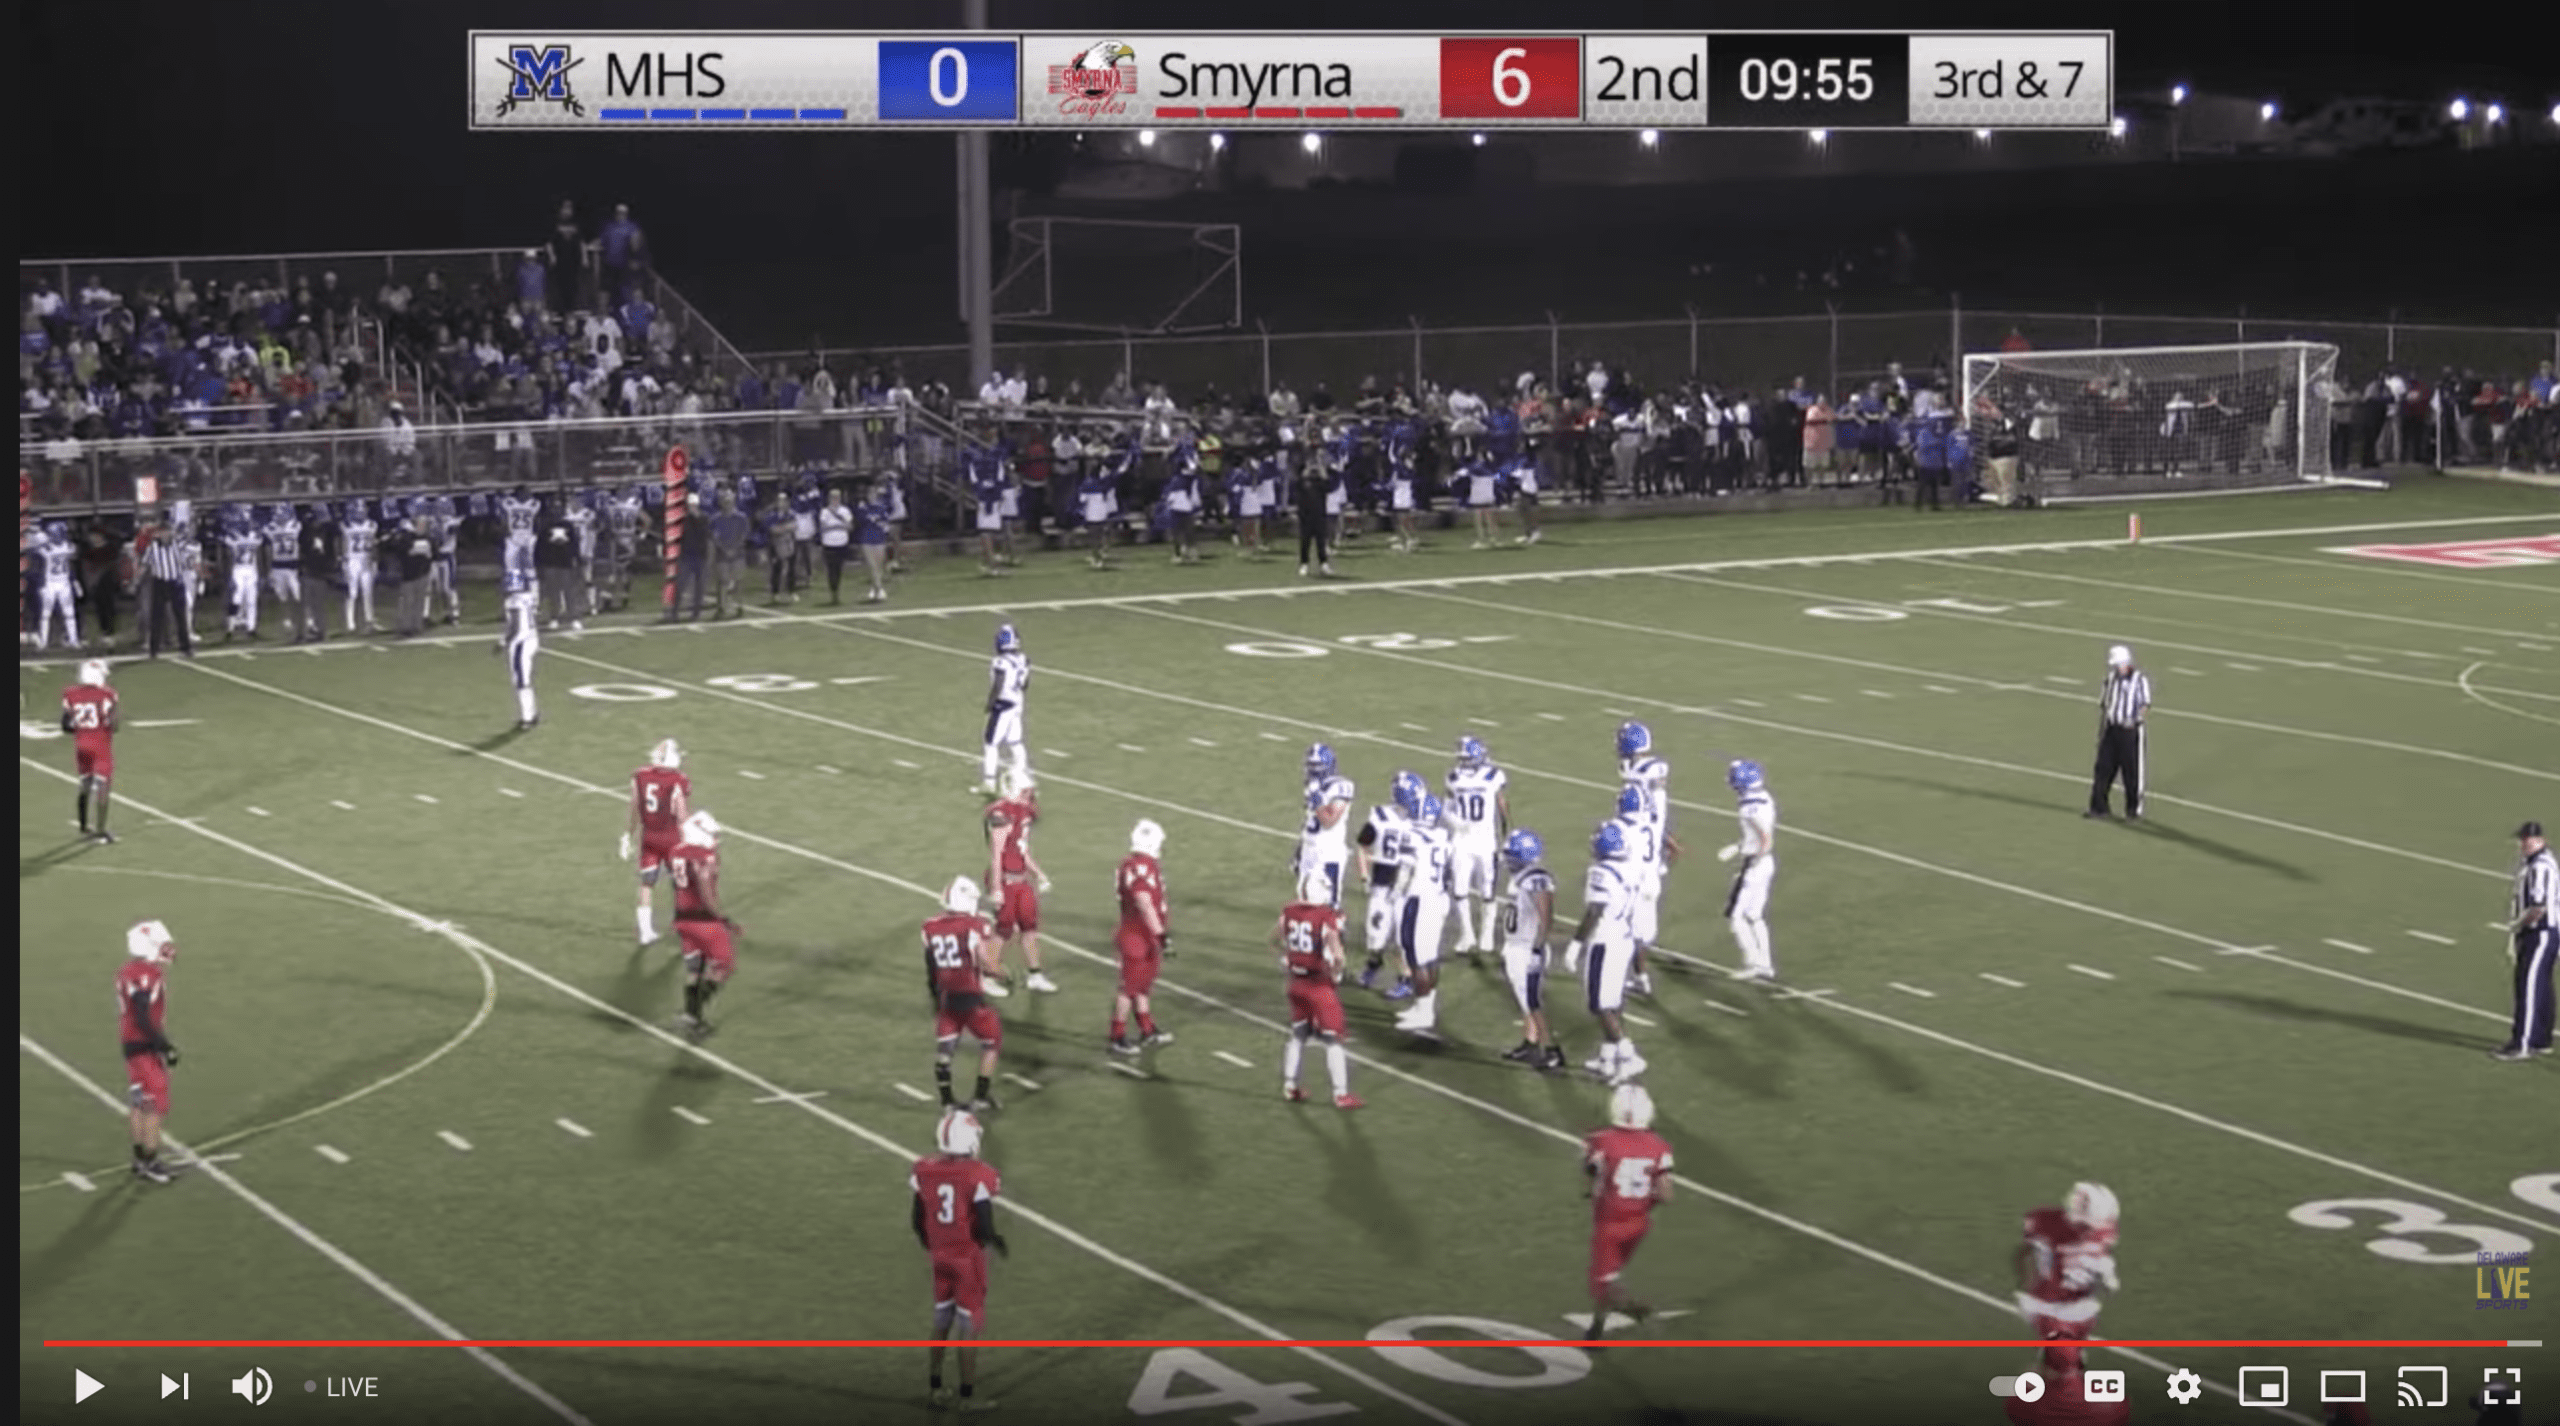 Middletown visits Smyrna Football LIVE from Smyrna